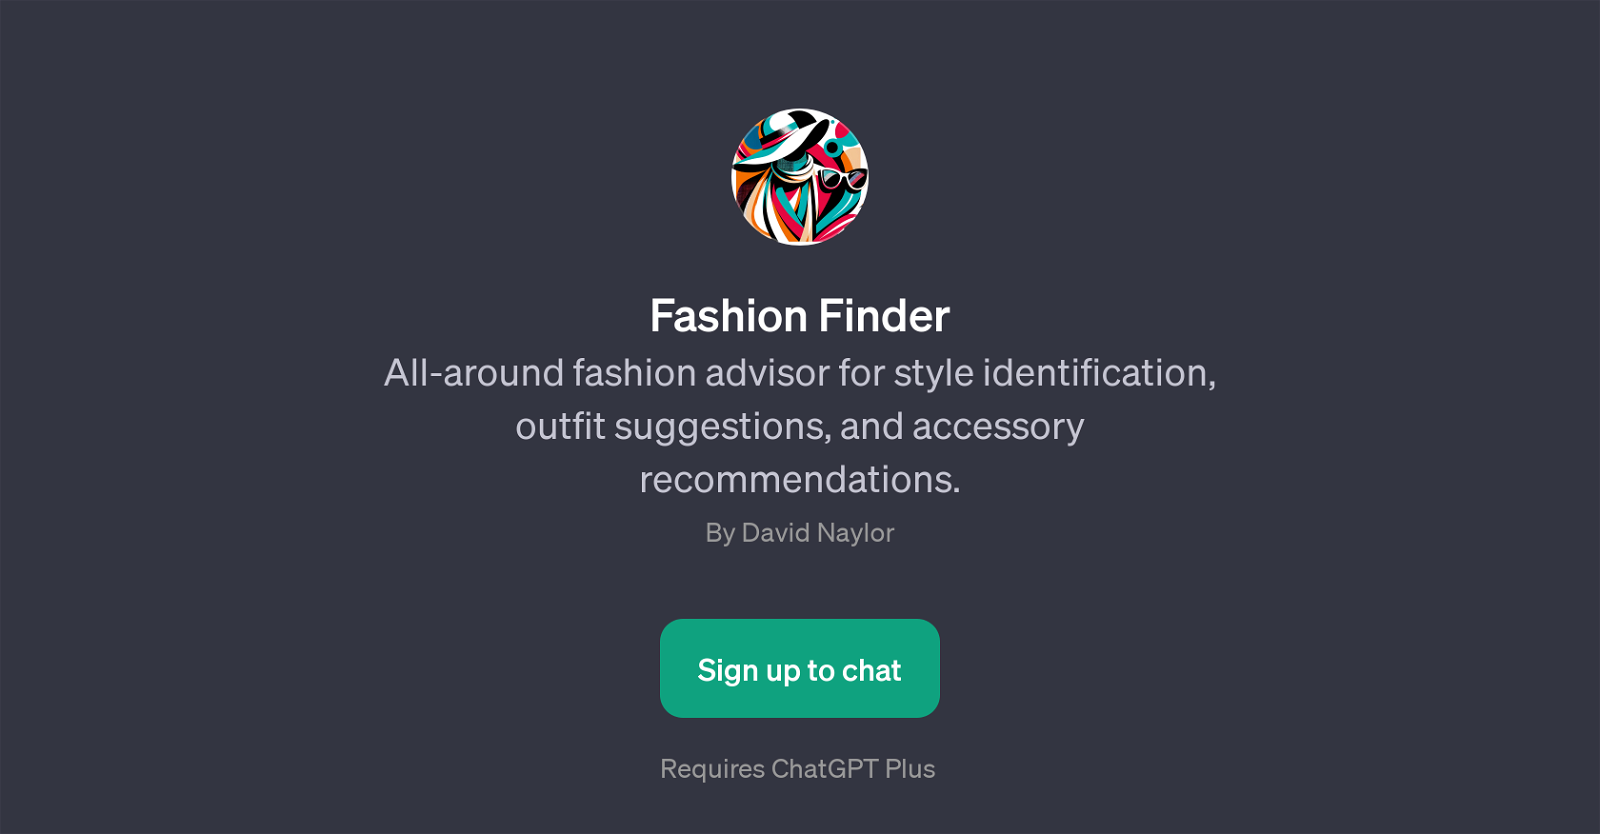 Fashion Finder website